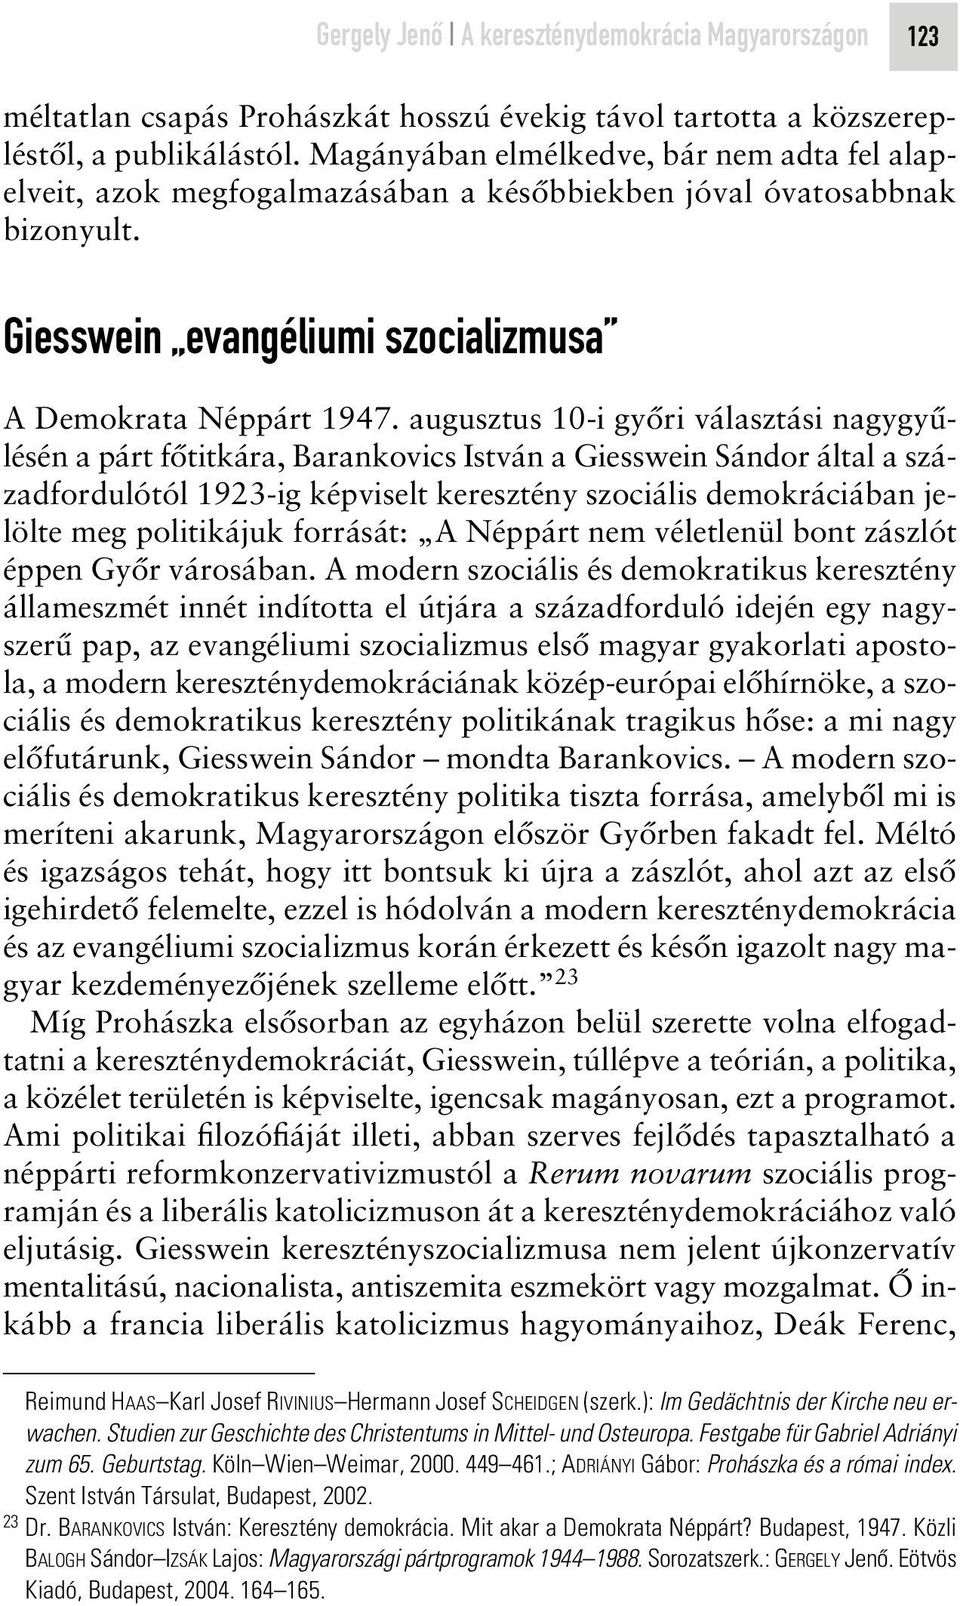 augusztus 10-i gyôri választási nagygyûlésén a párt fôtitkára, Barankovics István a Giesswein Sándor által a századfordulótól 1923-ig képviselt keresztény szociális demokráciában jelölte meg